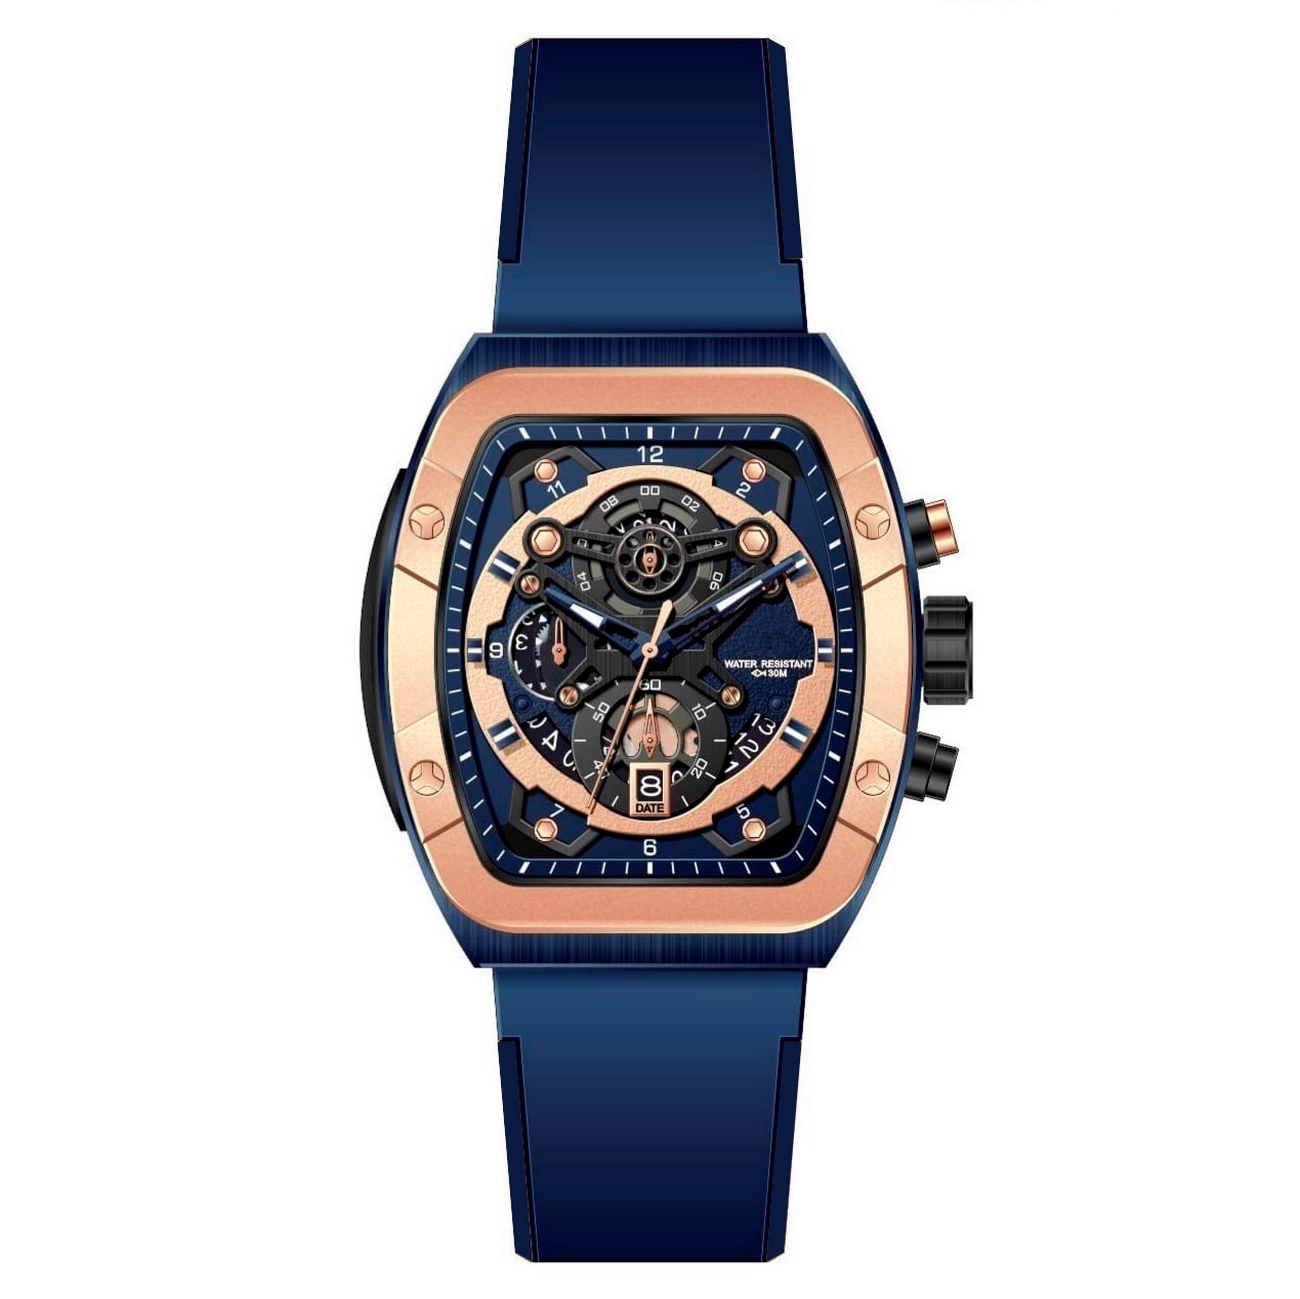 Reloj G-force Original H3994g Cronografo Azul + Estuche